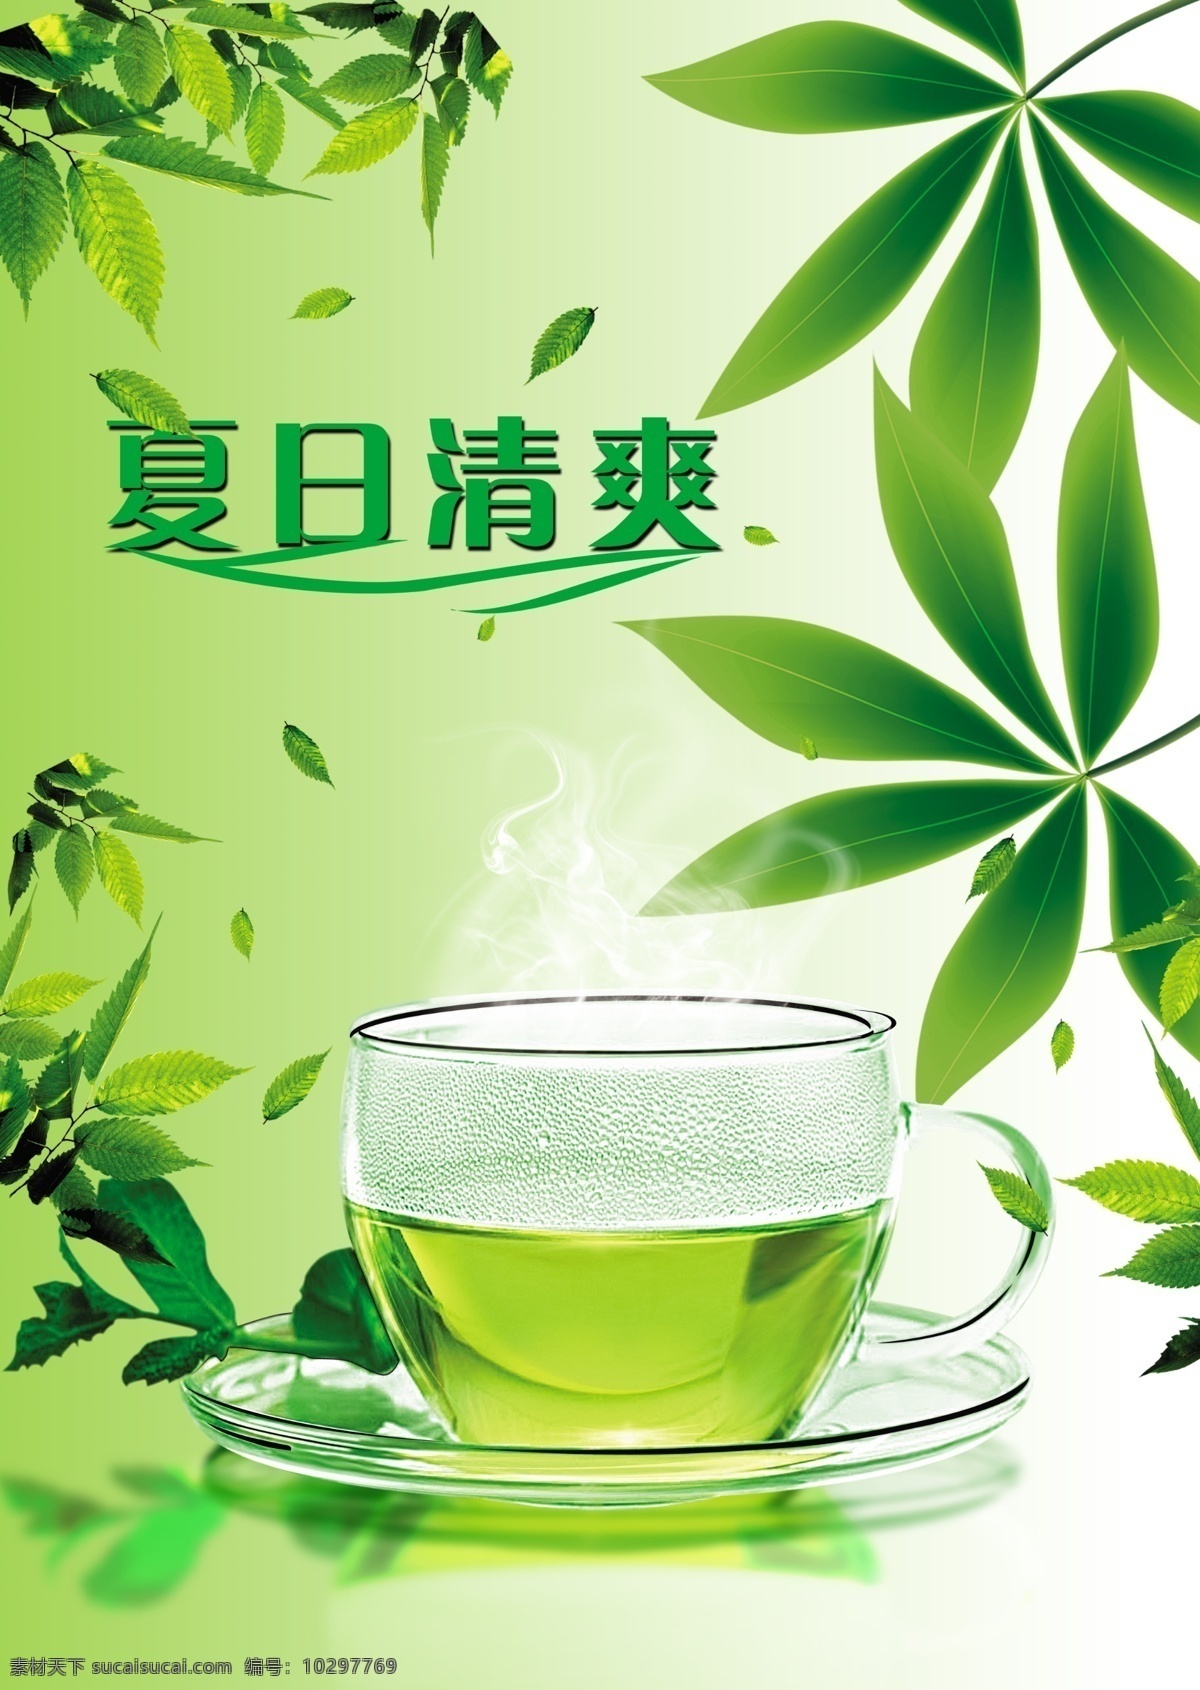 绿茶海报素材 绿茶海报 海报素材 绿茶 海报 茶